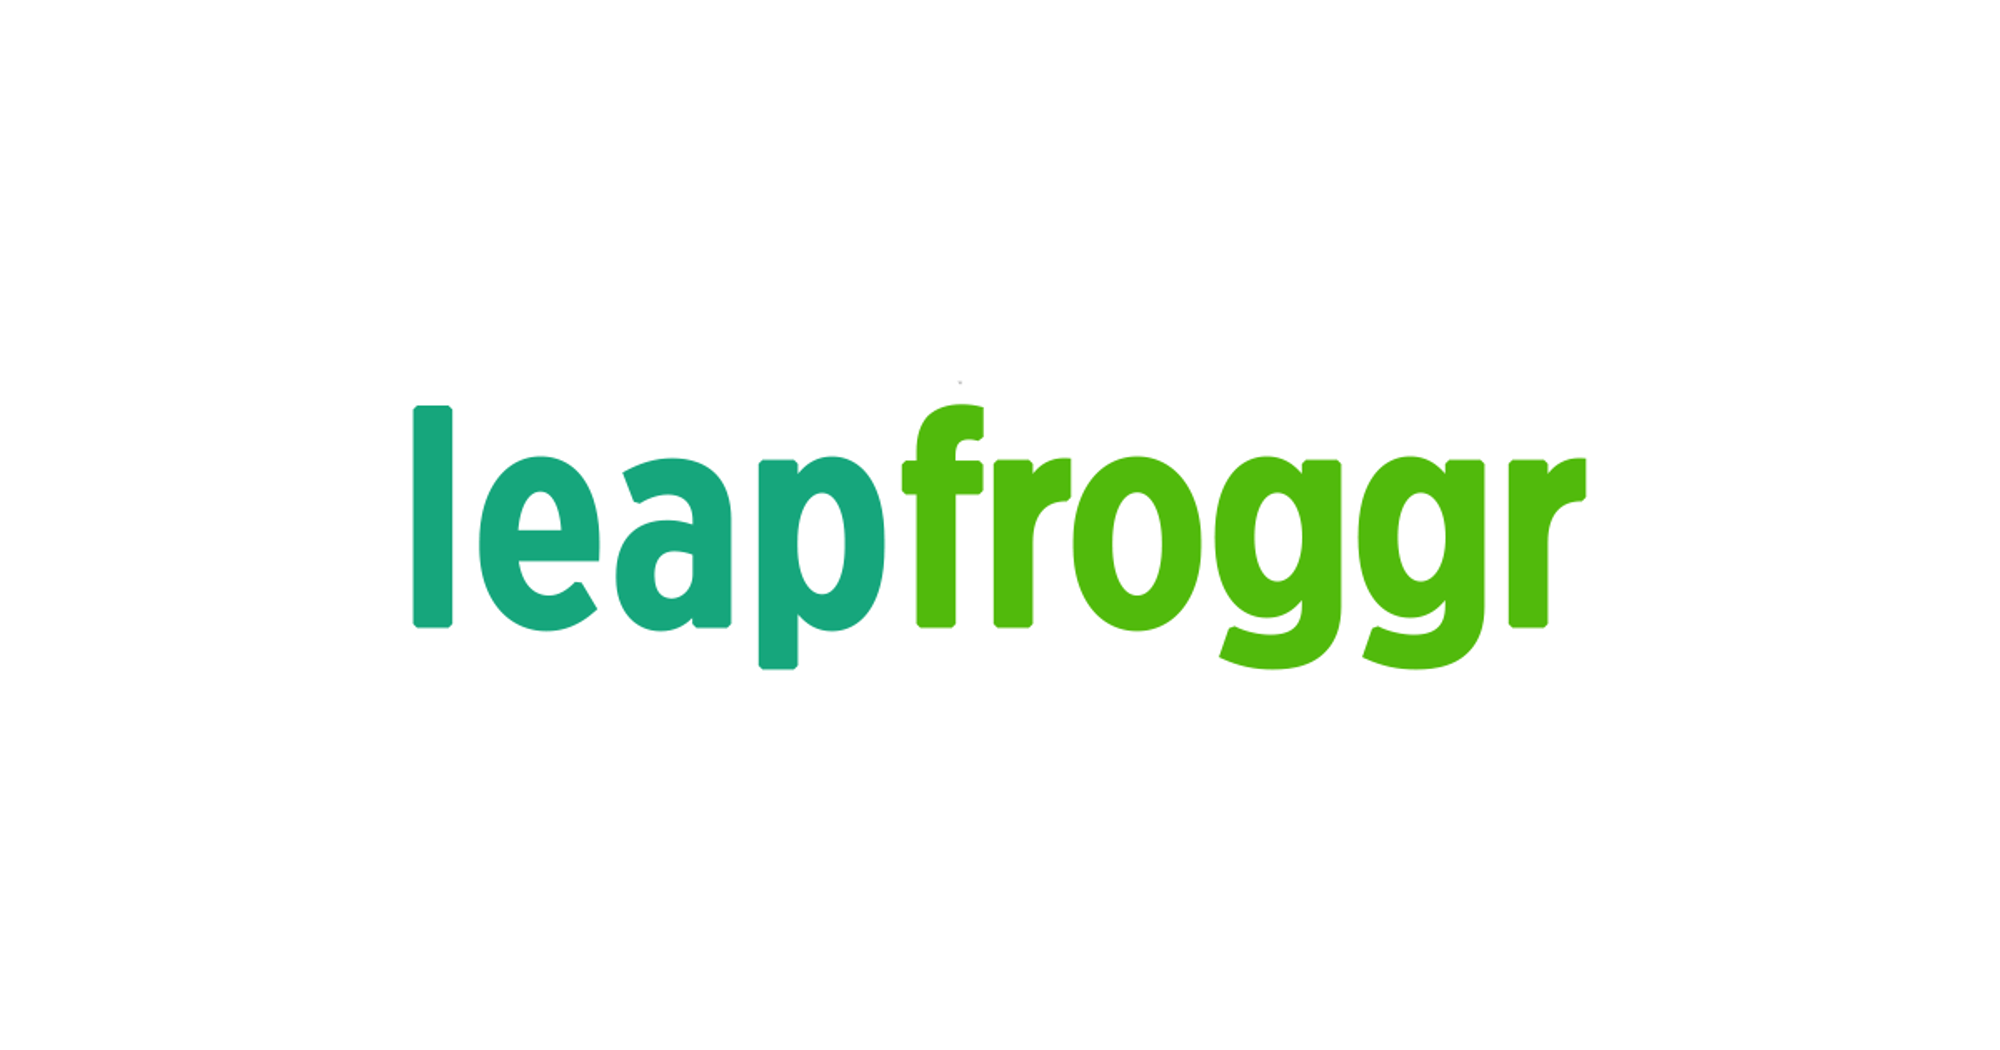 User Experience Designer | UX at LeapFroggr Inc.